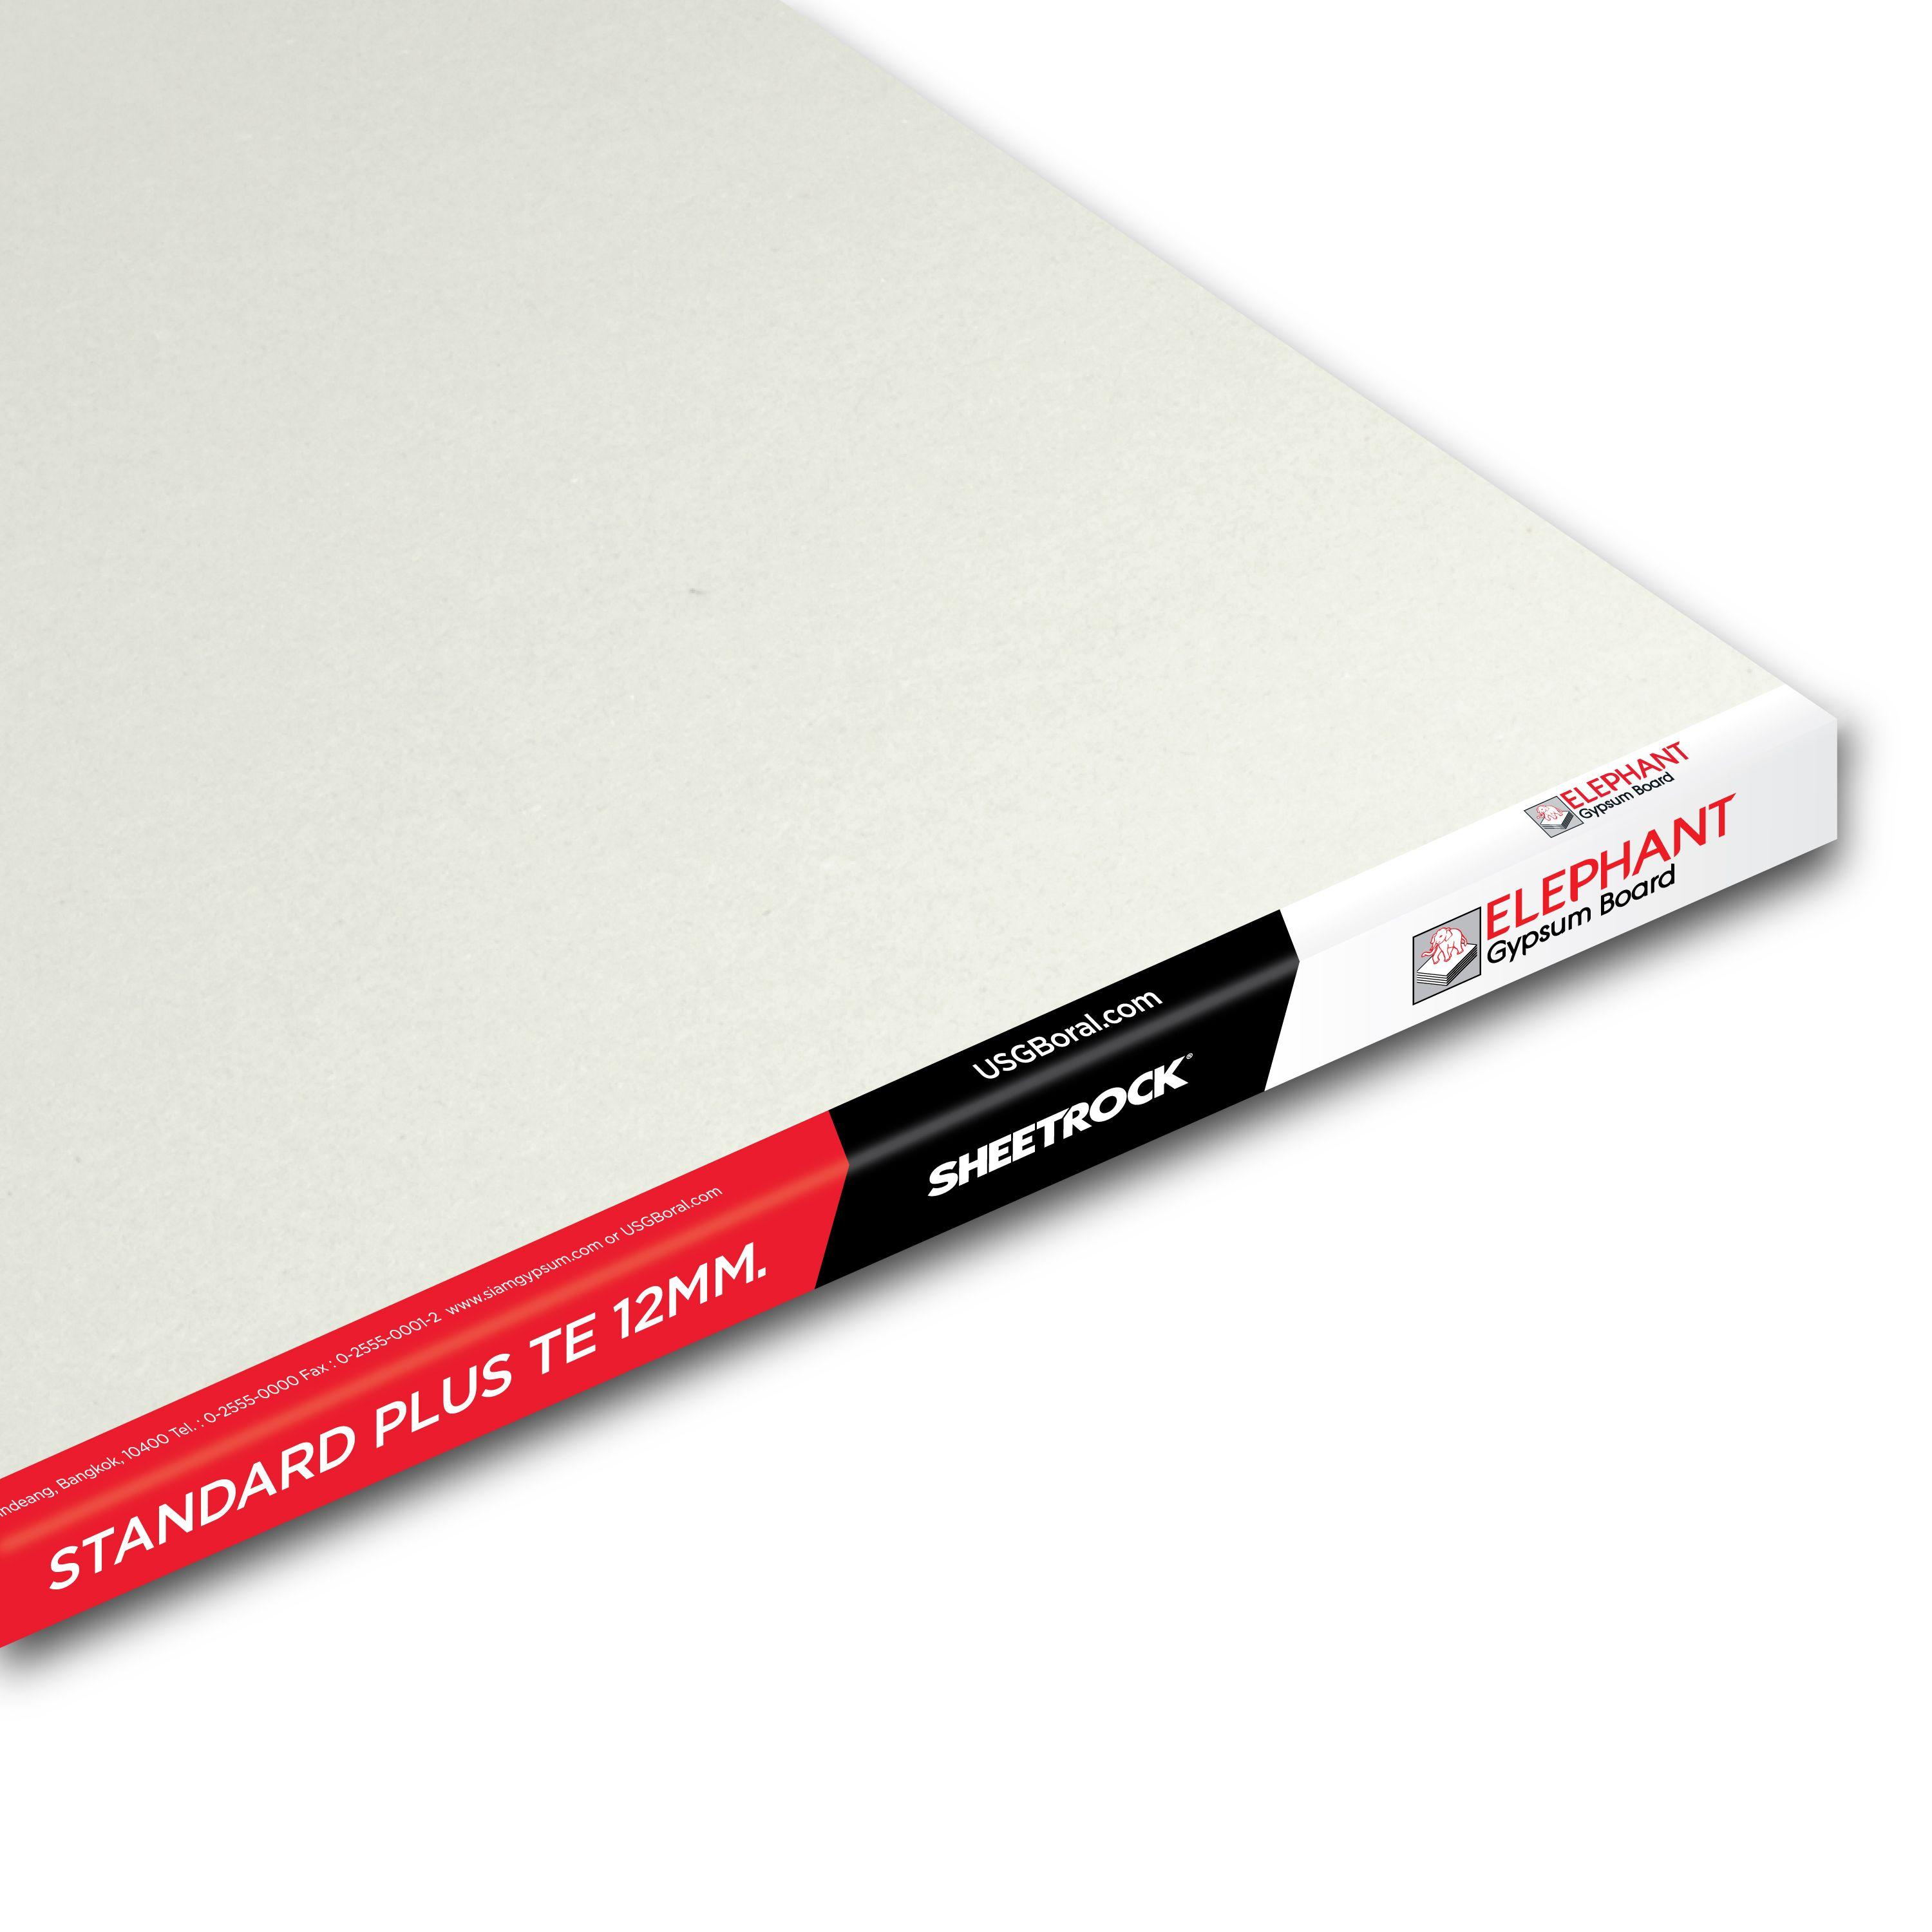 Sheetrock Logo - Standard Board Plus Gypsum Board | patented by SHEETROCK USA